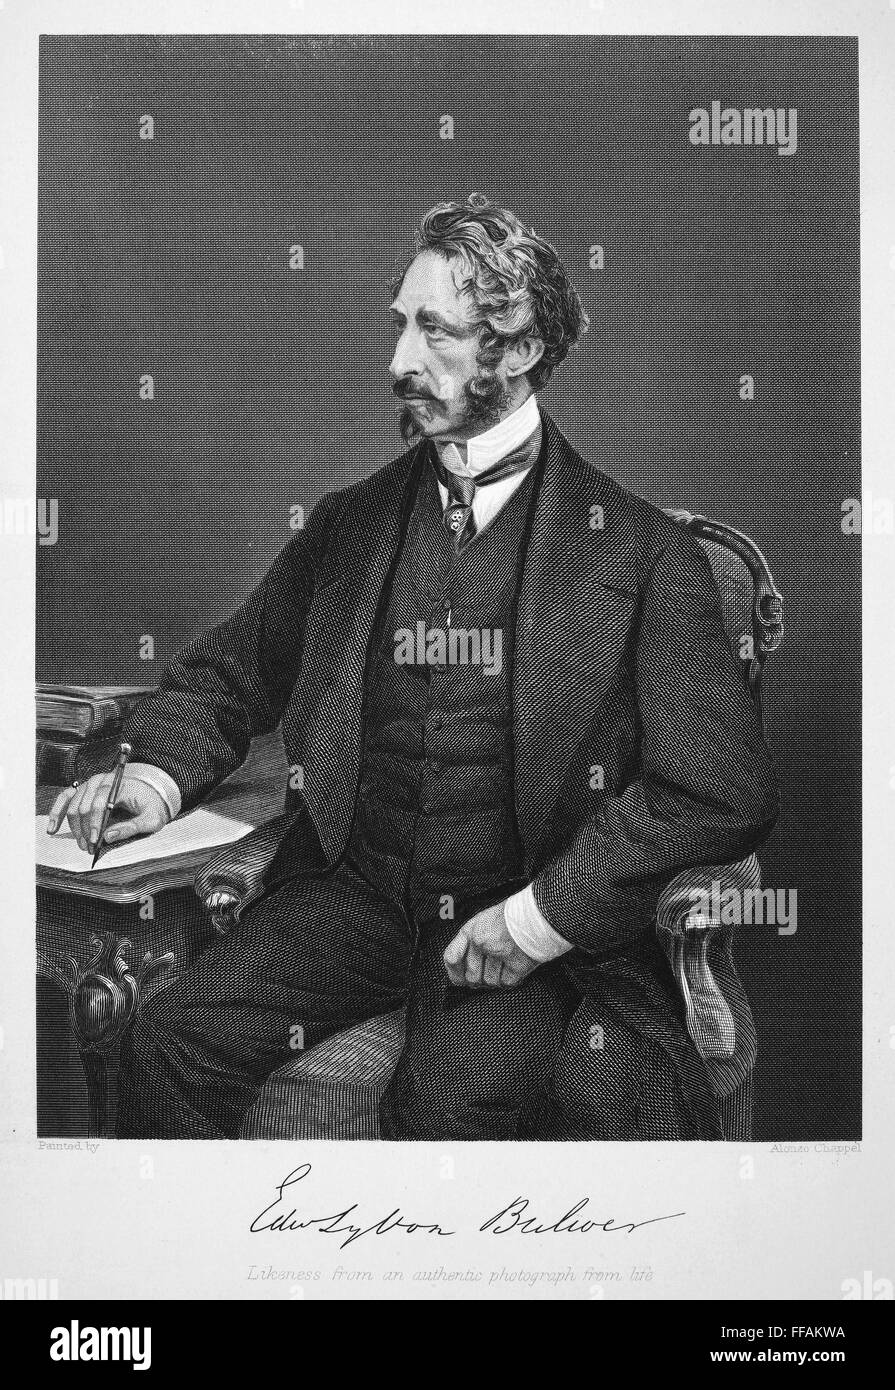 EDWARD BULWER LYTTON /n(1803-1873). 1er baron Lytton de Knebworth. Romancier et dramaturge anglais. Gravure sur acier, 1873. Banque D'Images